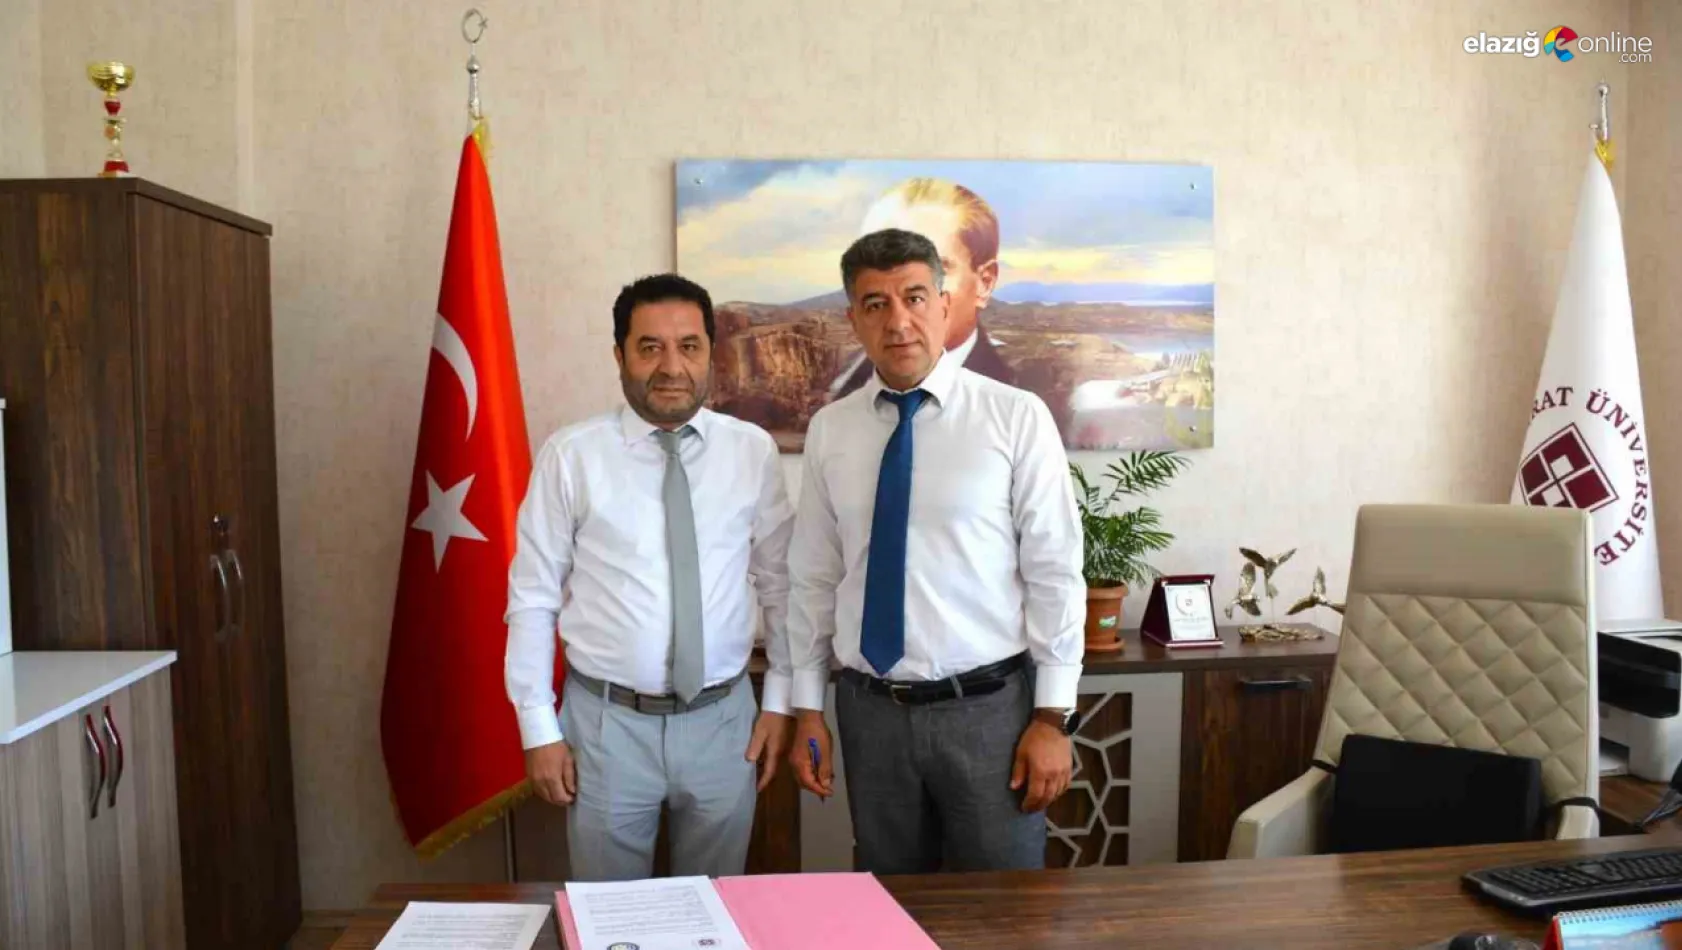 Elazığ'da üniversite-sanayi işbirliği